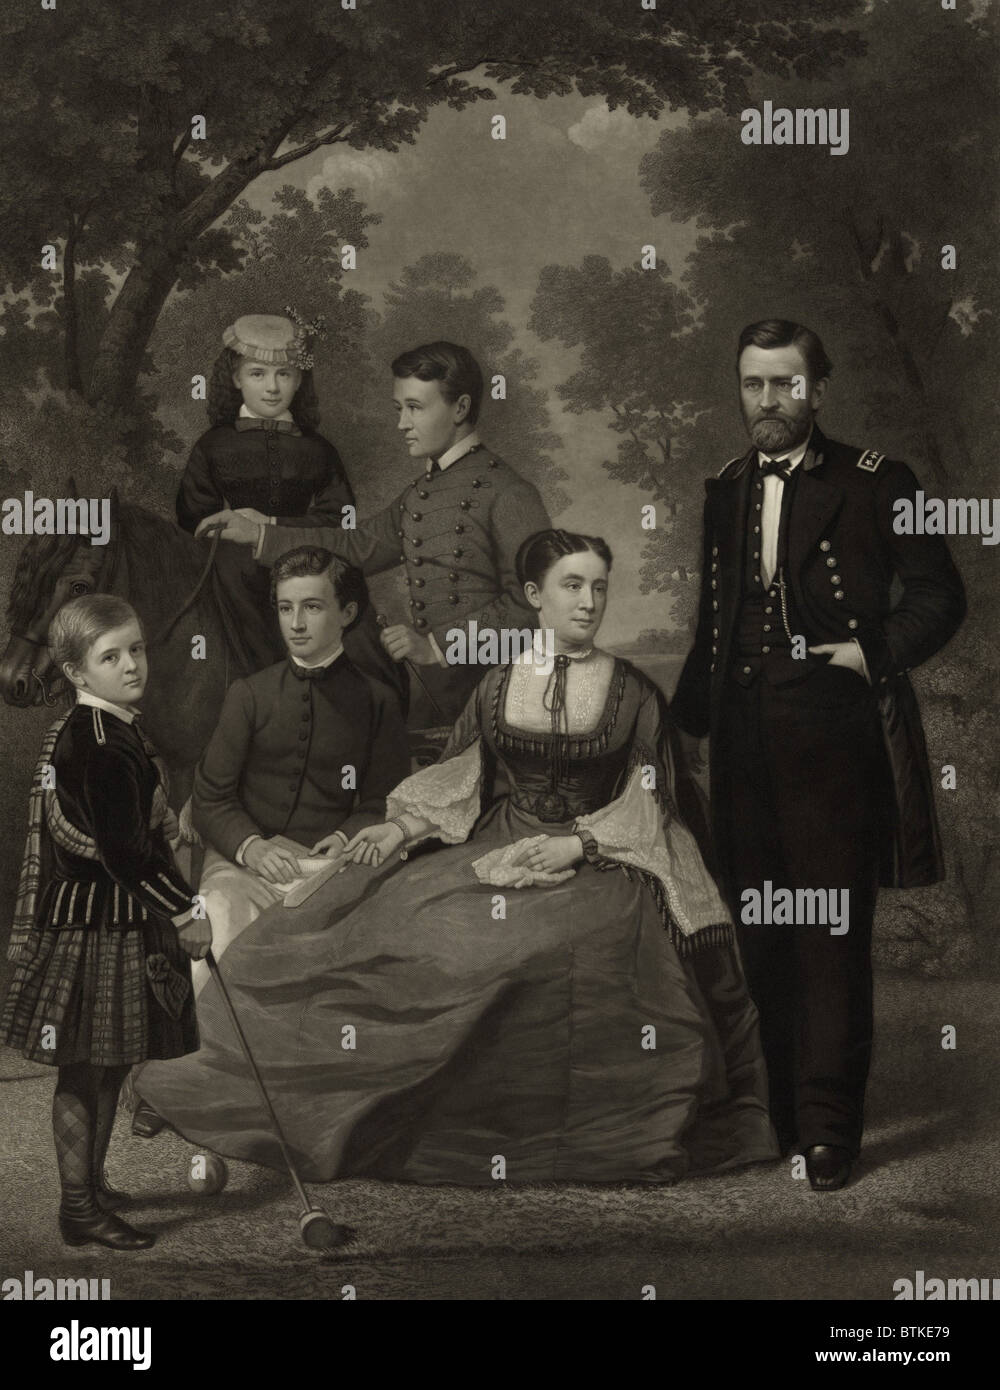 Ulysses S. Grant avec sa famille lorsqu'il était candidat à la présidence en 1868. De gauche à droite sont : enfants Jesse, Nellie, Buck, et Fredrick, épouse Julia, et le général Grant. Frederick aurait une carrière militaire réussie, atteignant le grade de général. Banque D'Images